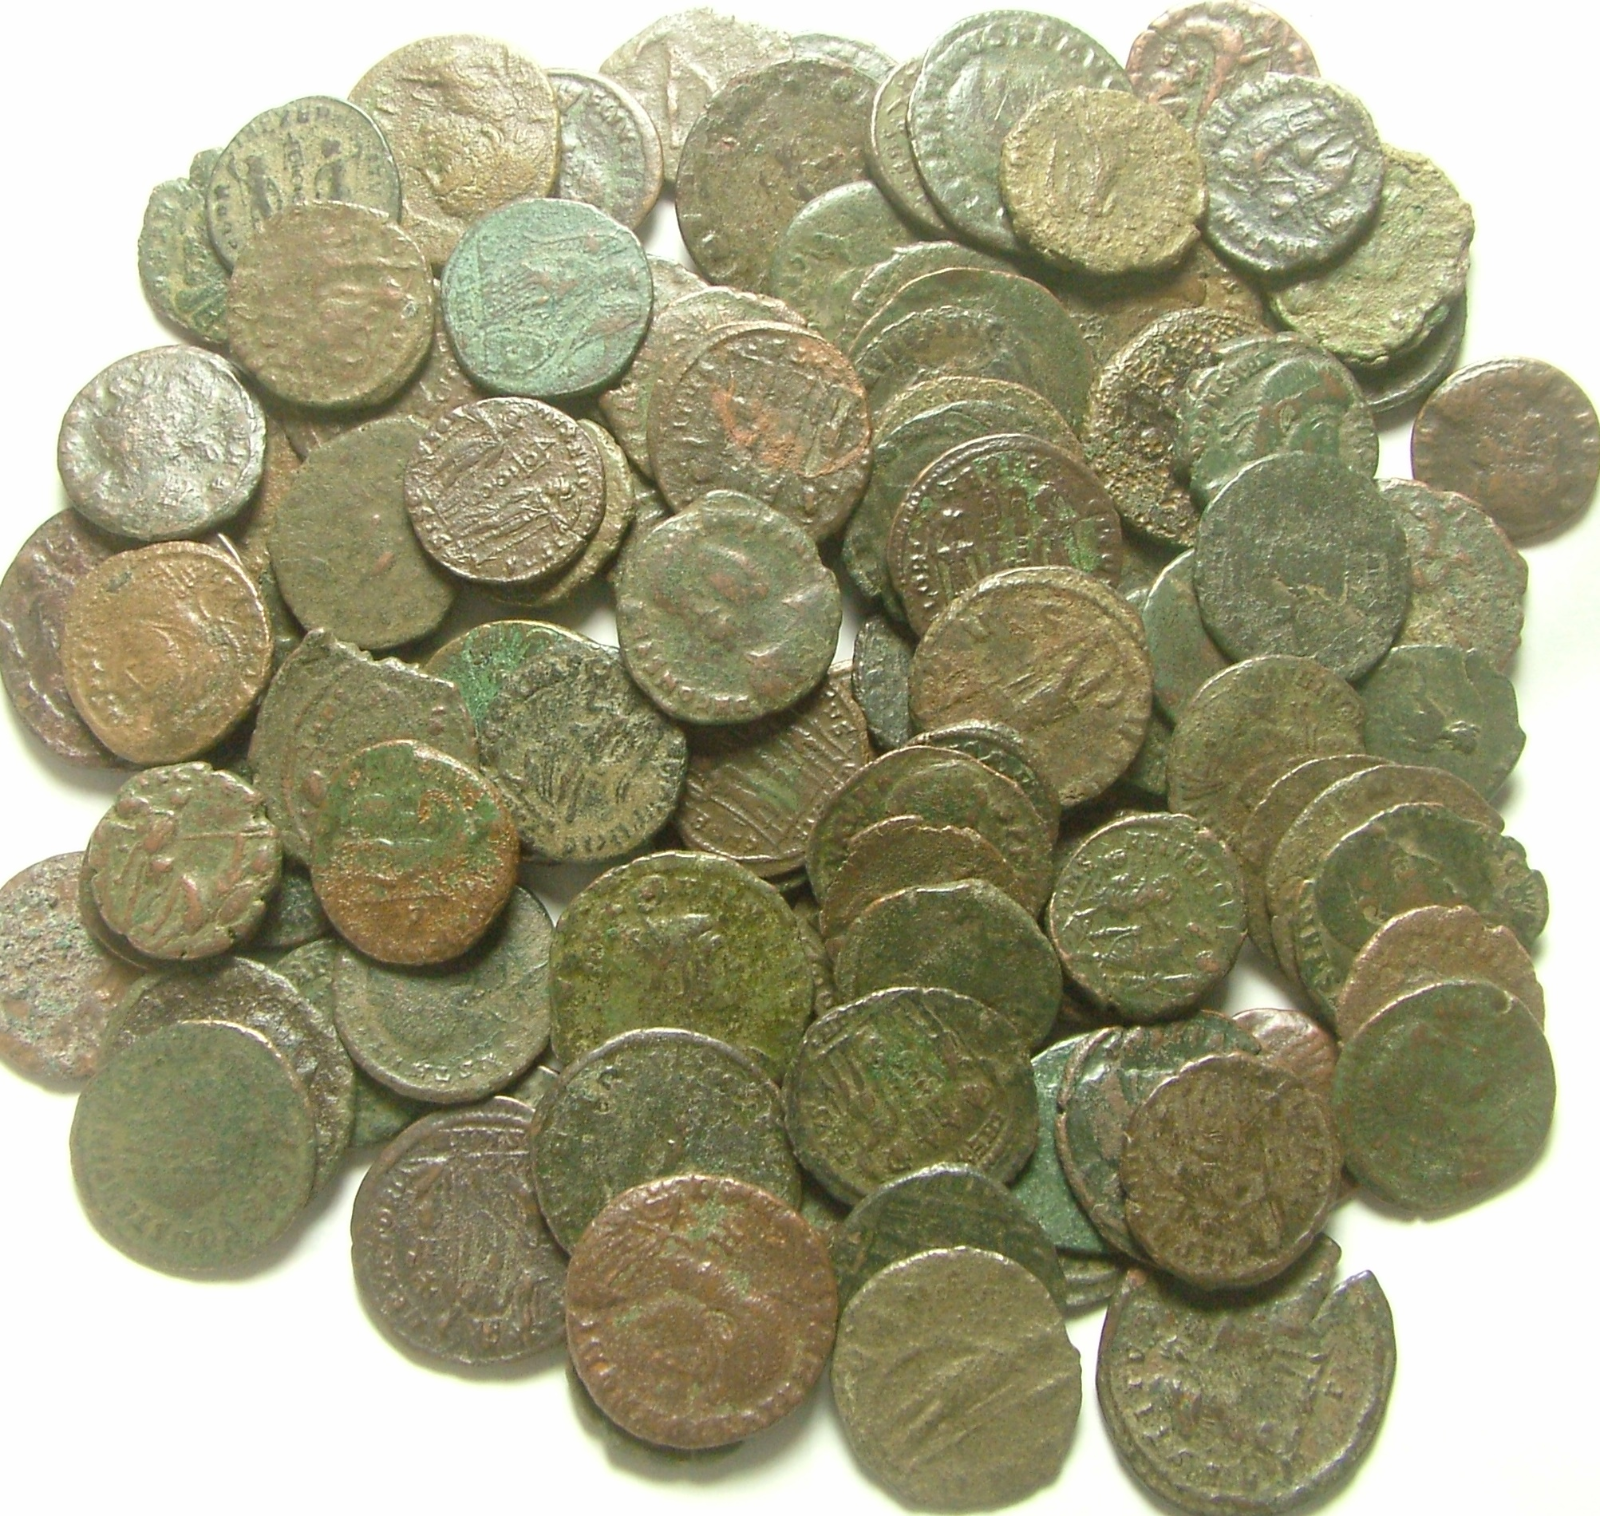 Lot genuine Ancient Roman coins Constantine/Valens/Constantius/Licinius/Claudius Без бренда - фотография #2